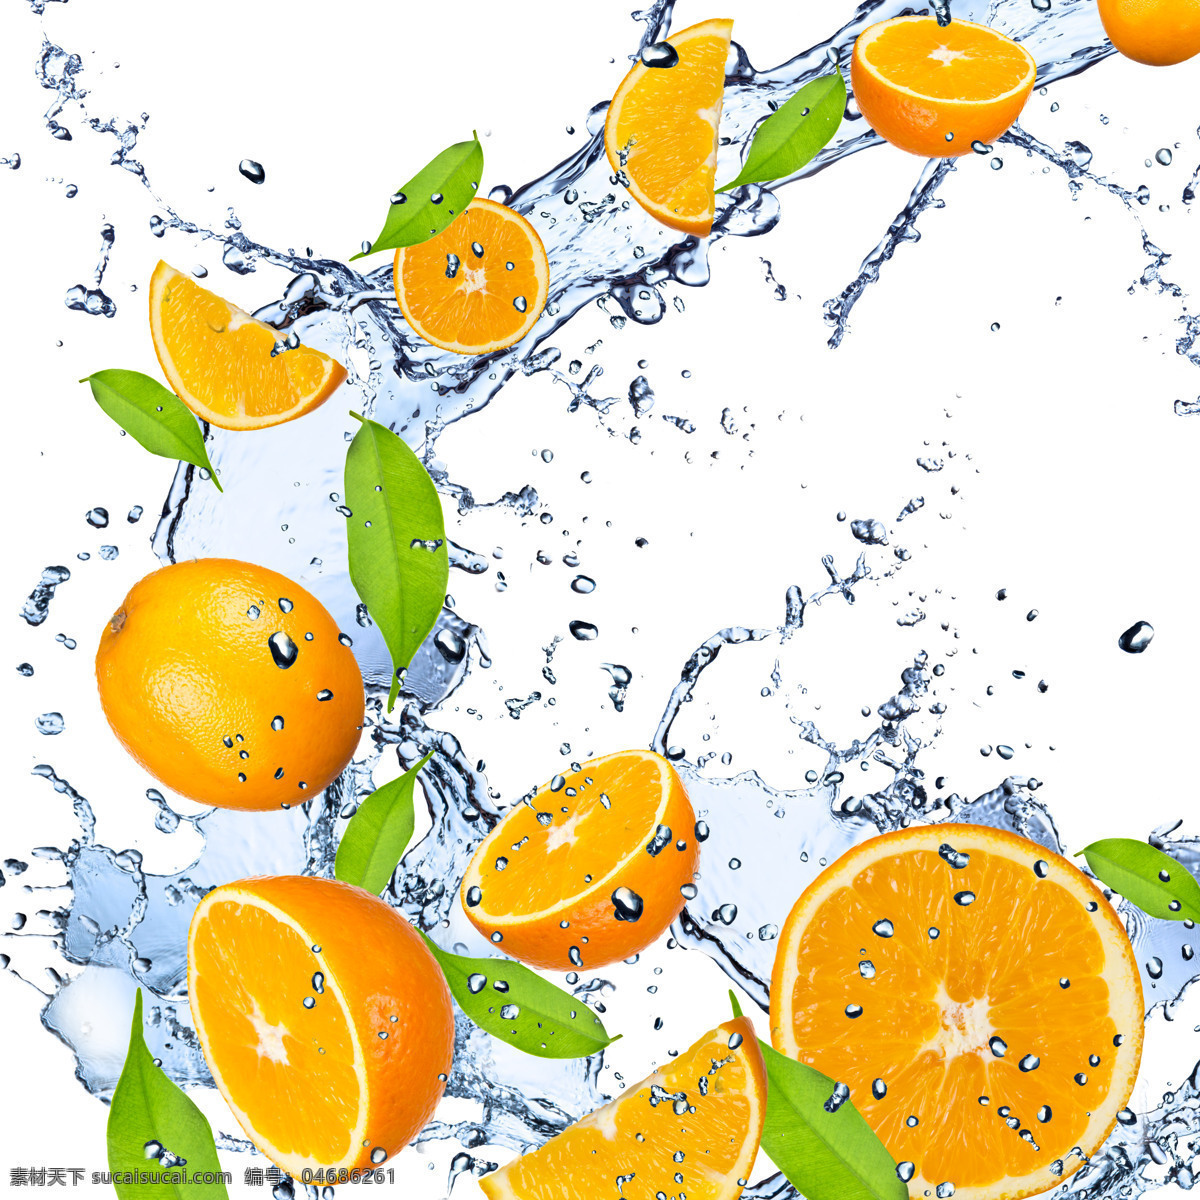 水花中的橙子 水花 橙子 水果 流水 流动水花 溅起水花 生物世界